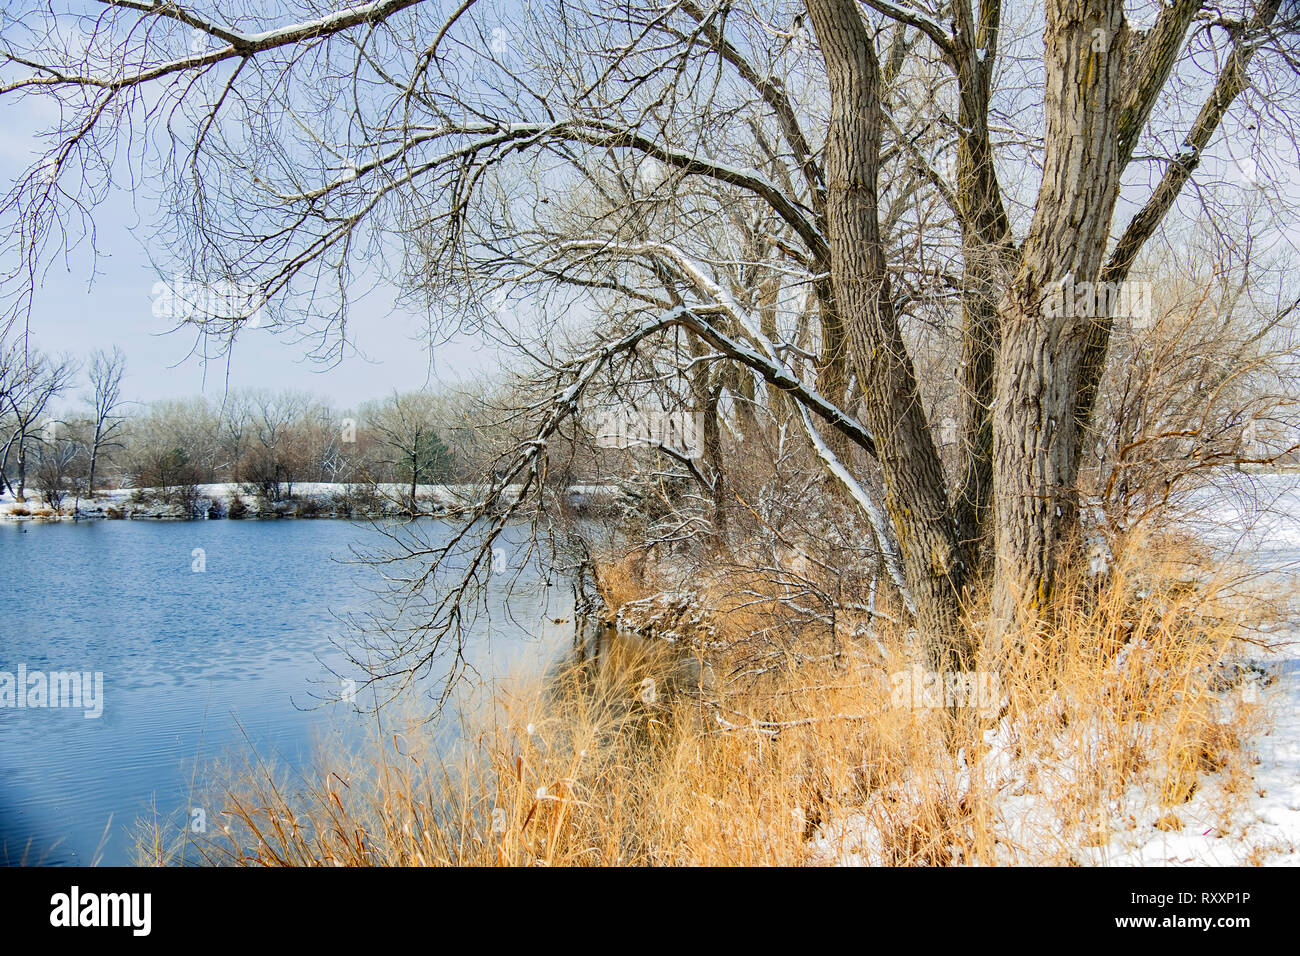 Un paysage hivernal composé d'un lac, d'herbes mortes, de la neige et des arbres. Wichita, Kansas, États-Unis. Sedgwick County Park. Banque D'Images